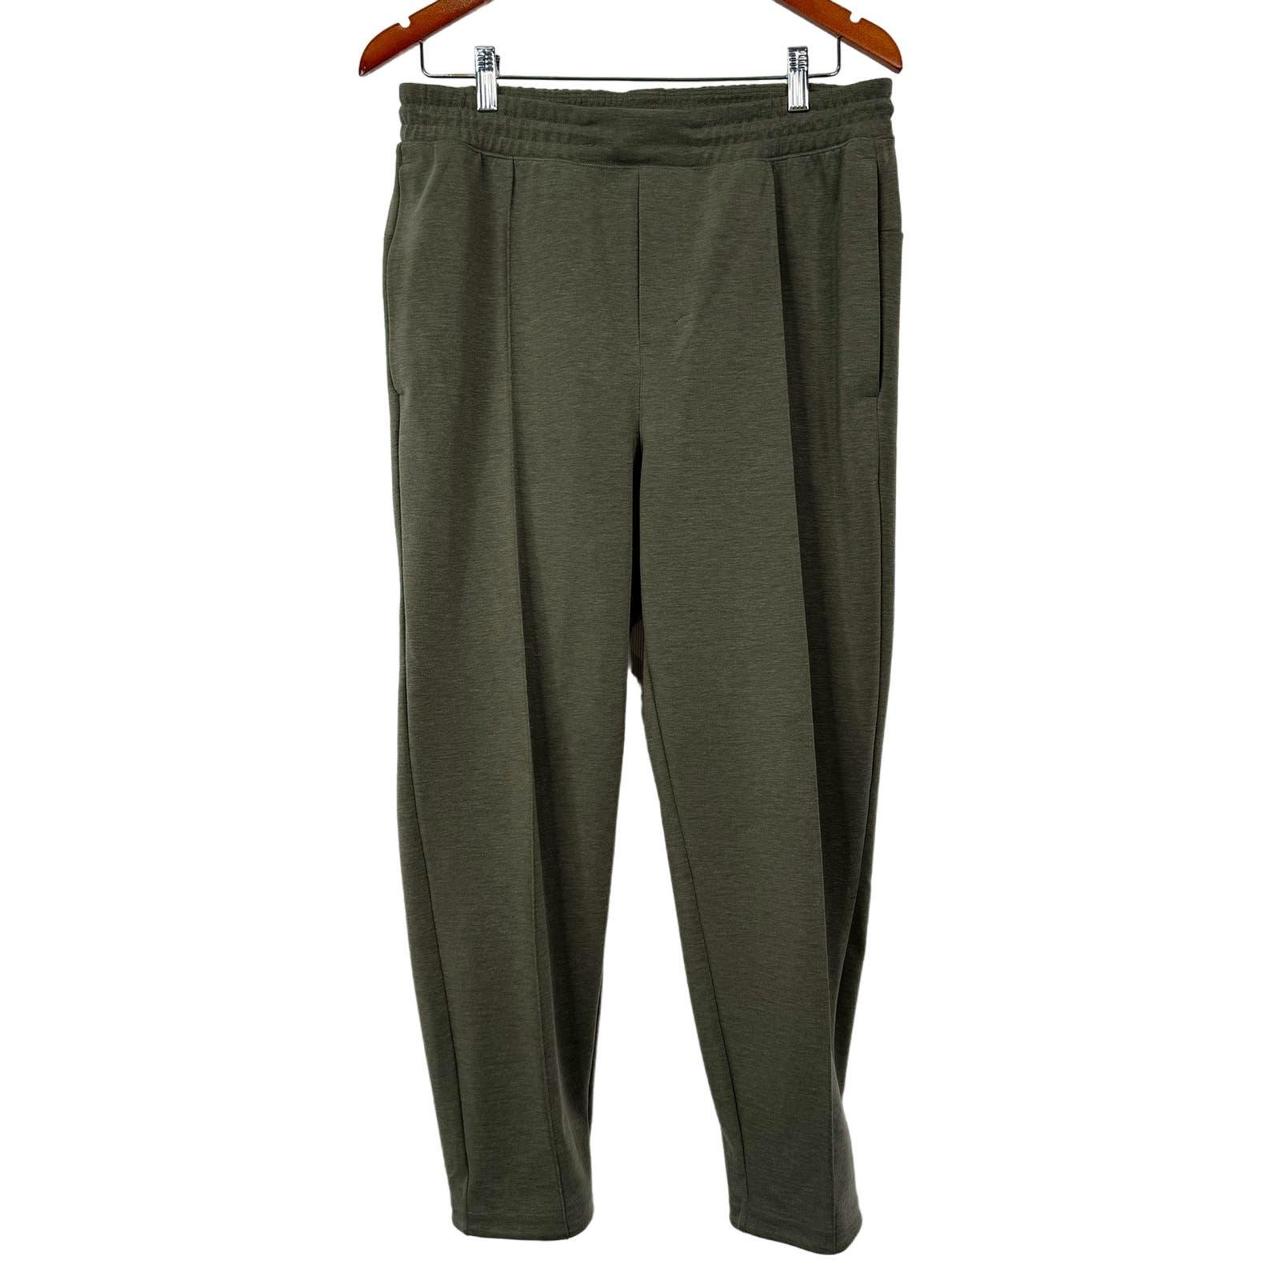 GridLiner Pull-On Trouser, Men's Joggers